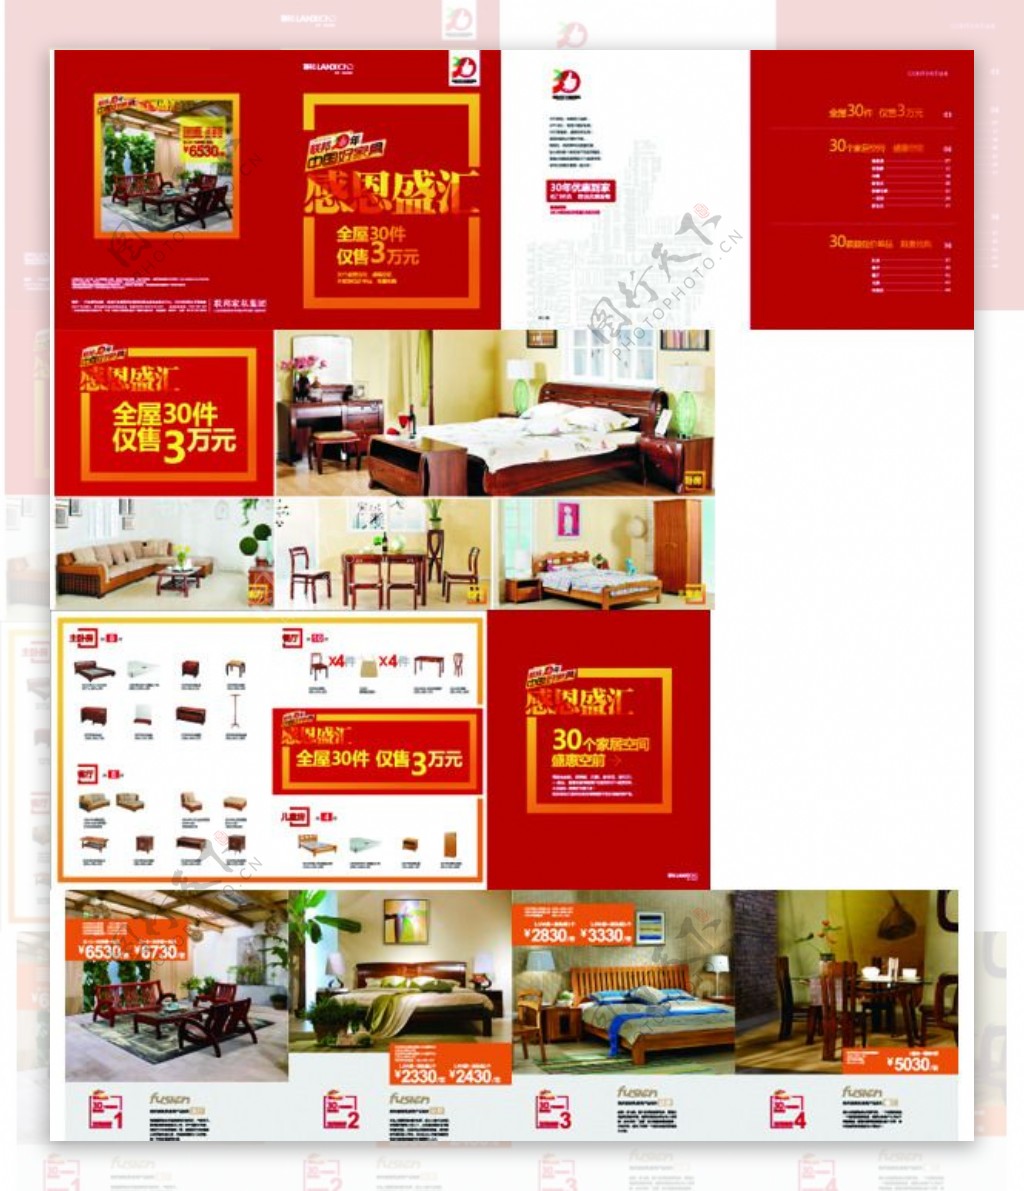 周年庆红色系列家具CDR画册